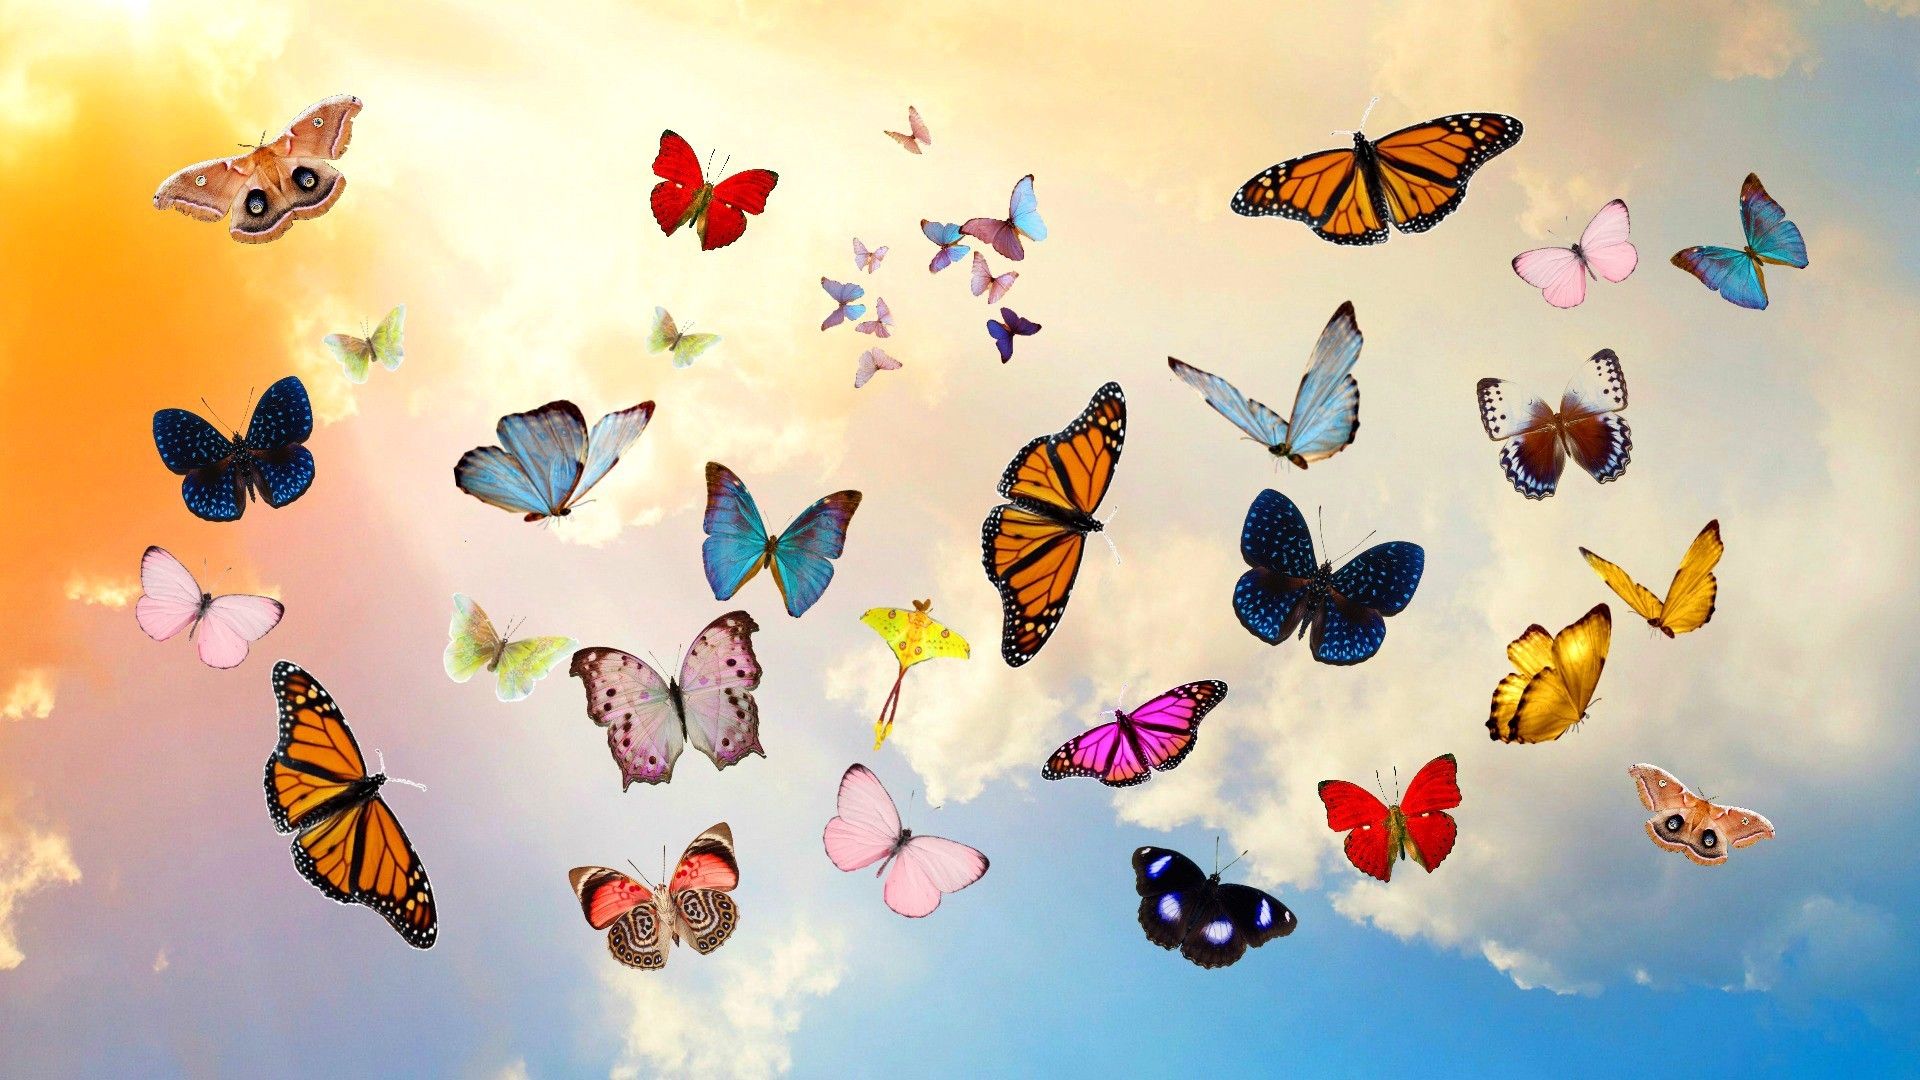 Bạn muốn có một hình nền bướm chất lượng cao để trang trí cho điện thoại hay máy tính của mình? Hãy tải về hình nền bướm này để tận hưởng những gam màu tuyệt đẹp và những chi tiết tinh tế. Những hình ảnh bướm đầy màu sắc sẽ làm cho màn hình của bạn trở nên vô cùng sinh động và đẹp mắt.